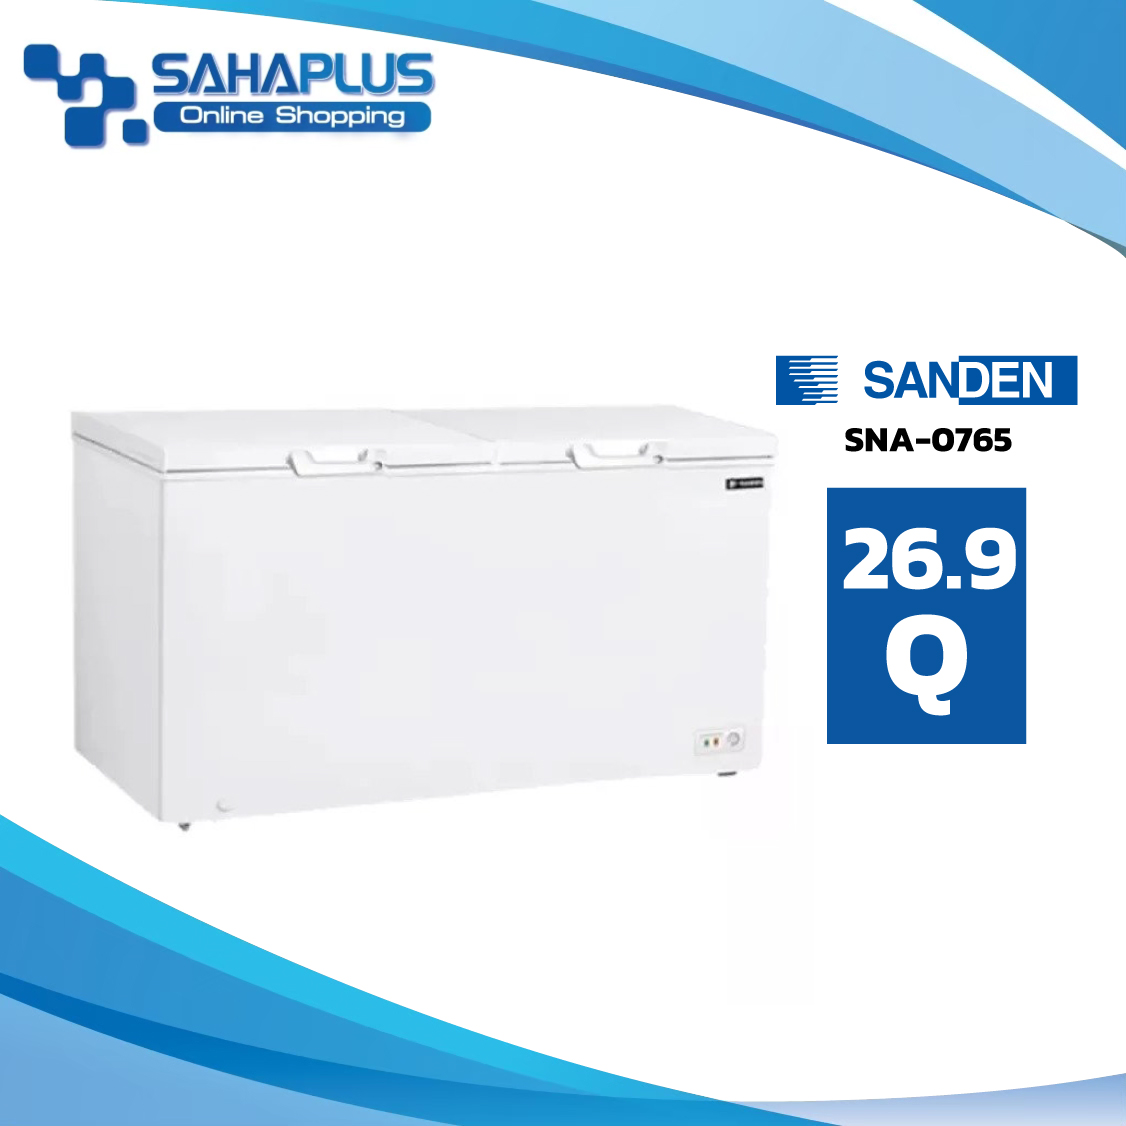 ตู้แช่แข็งฝาทึบ Sanden รุ่น SNA-0765 ขนาด 26.9 Q ( รับประกันนาน 5 ปี )